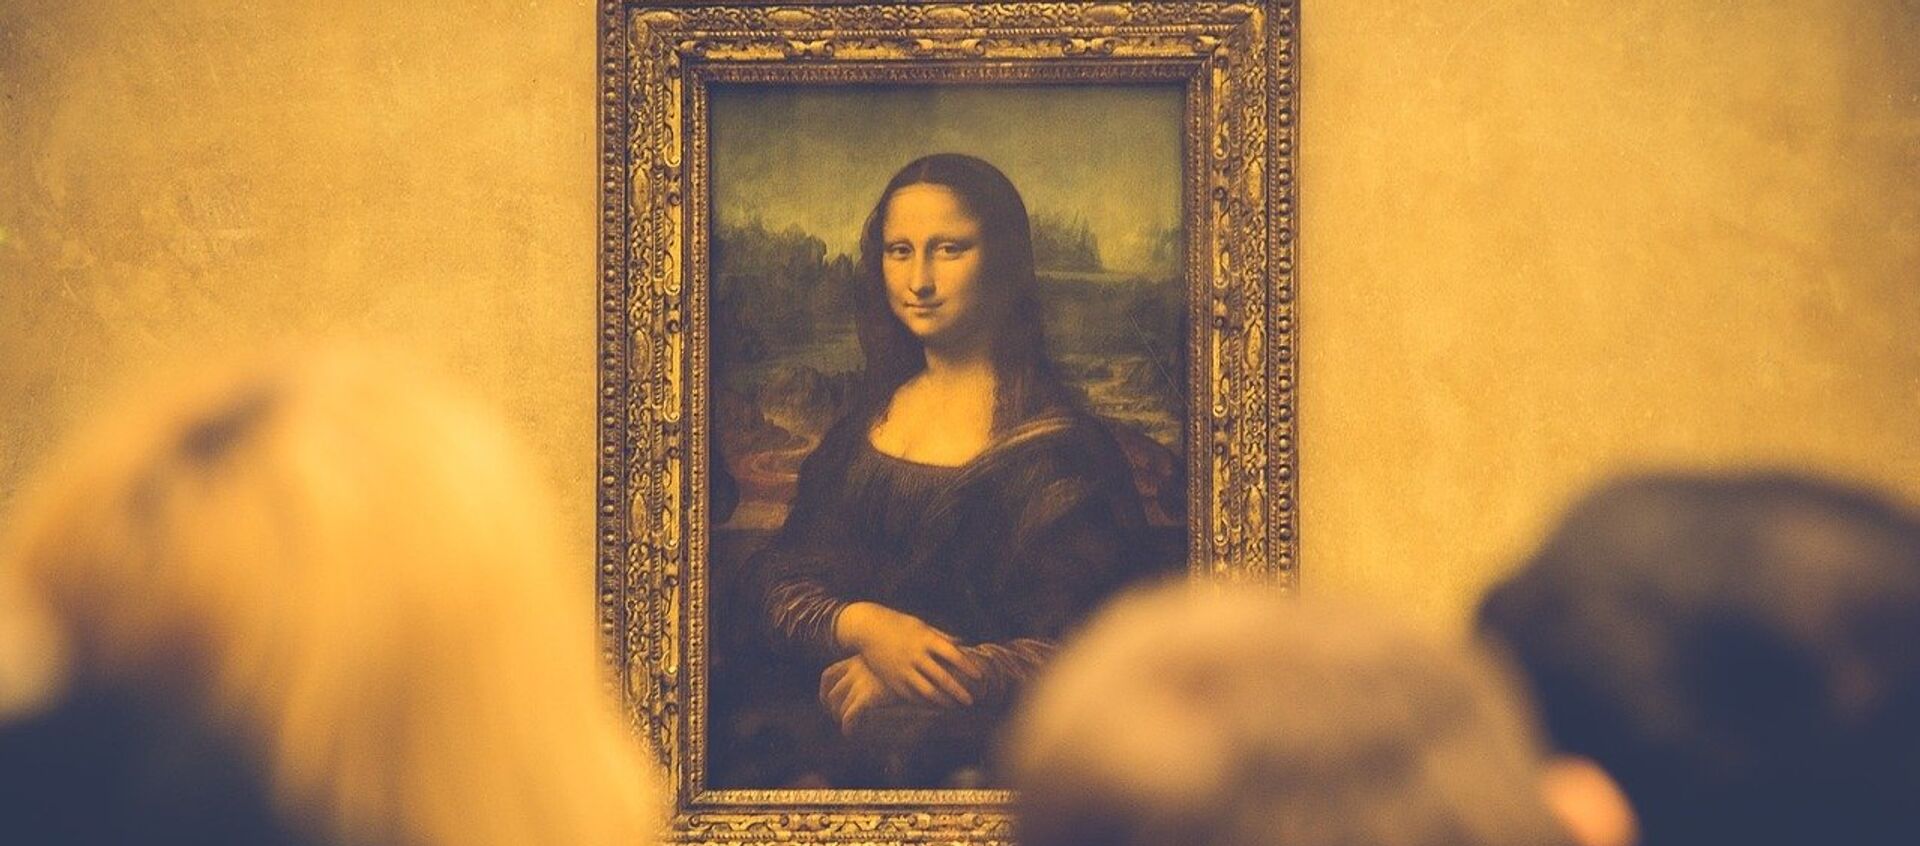 Mona Lisa, el cuadro - Sputnik Mundo, 1920, 20.11.2019